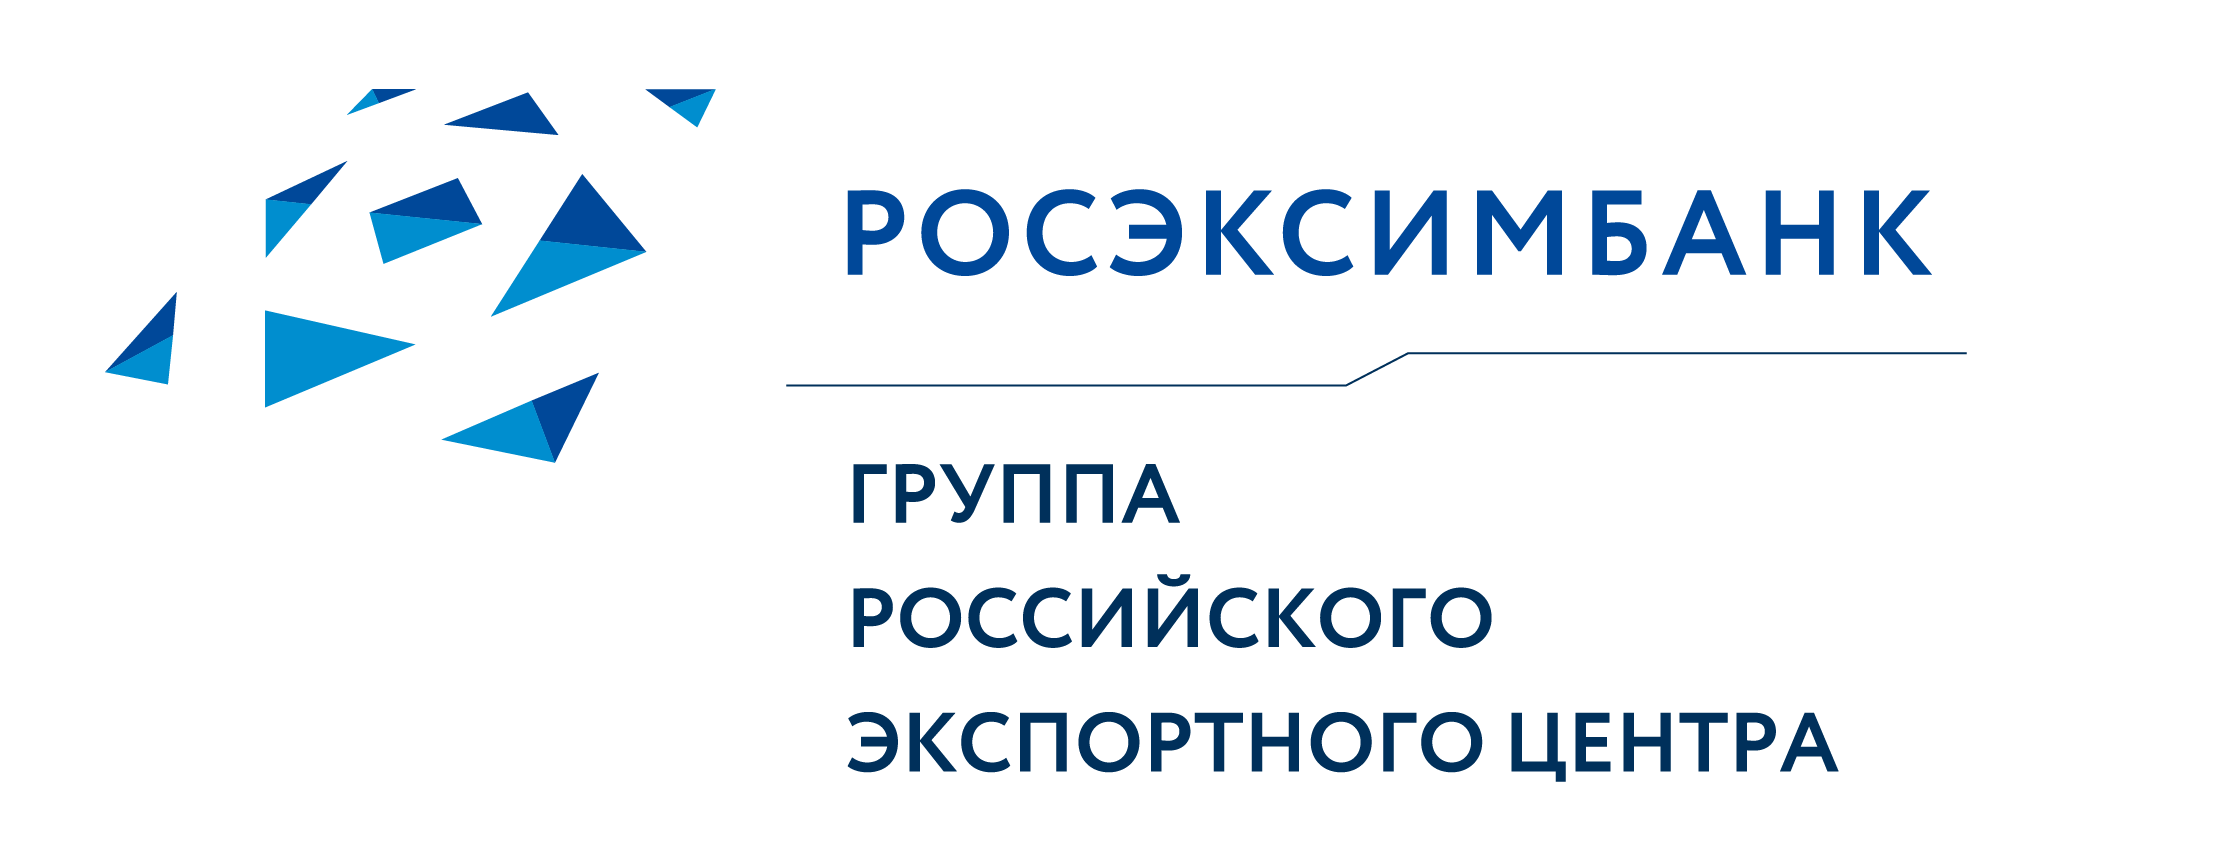 Государственный специализированный Российский экспортно-импортный банк (акционерное общество)